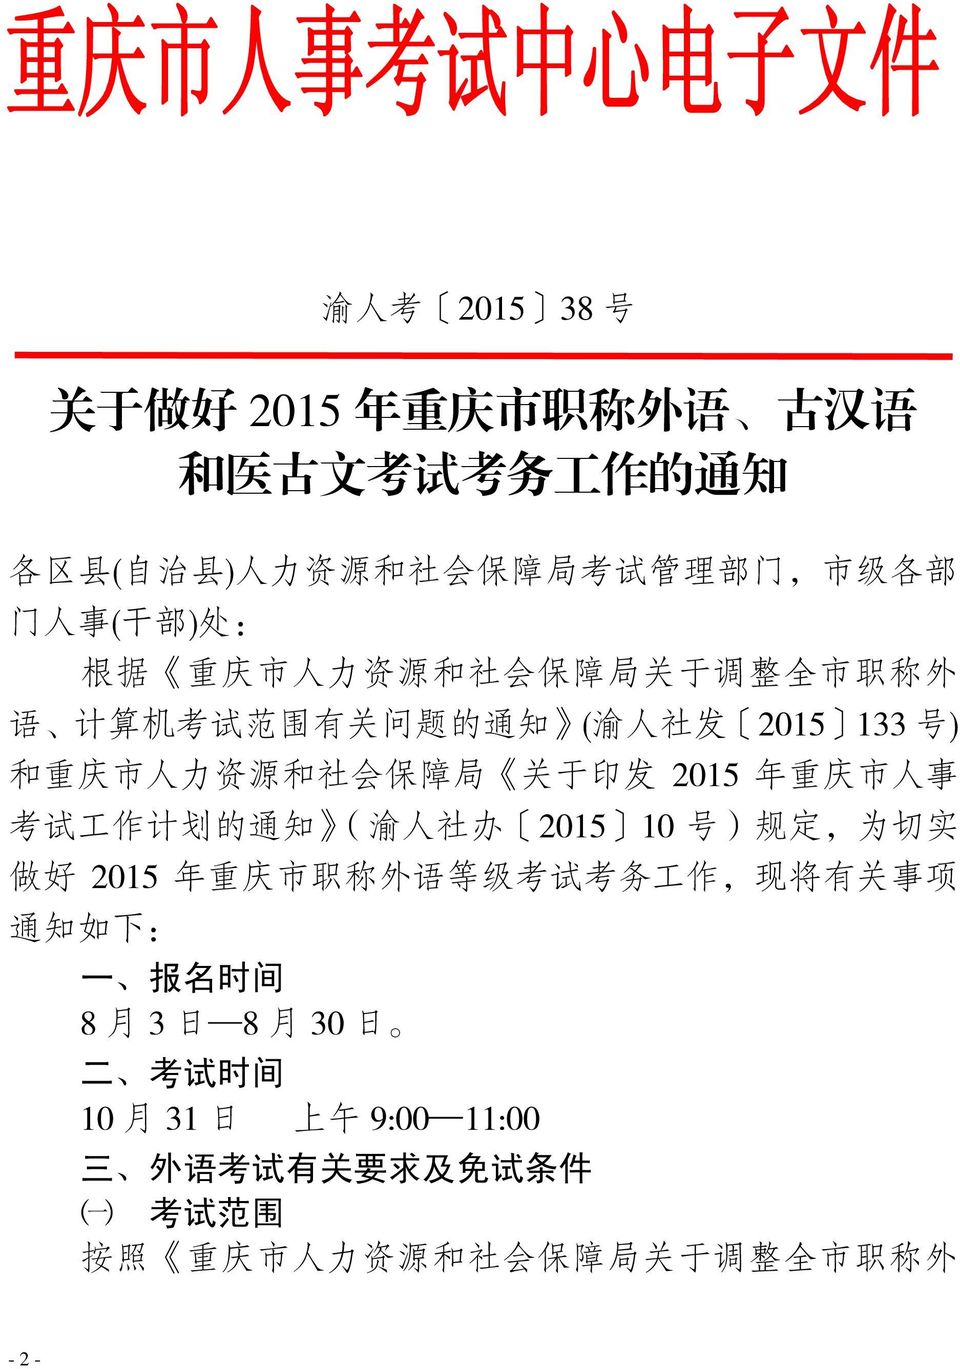 发 2015 年 重 庆 市 人 事 考 试 工 作 计 划 的 通 知 ( 渝 人 社 办 2015 10 号 ) 规 定, 为 切 实 做 好 2015 年 重 庆 市 职 称 外 语 等 级 考 试 考 务 工 作, 现 将 有 关 事 项 通 知 如 下 : 一 报 名 时 间